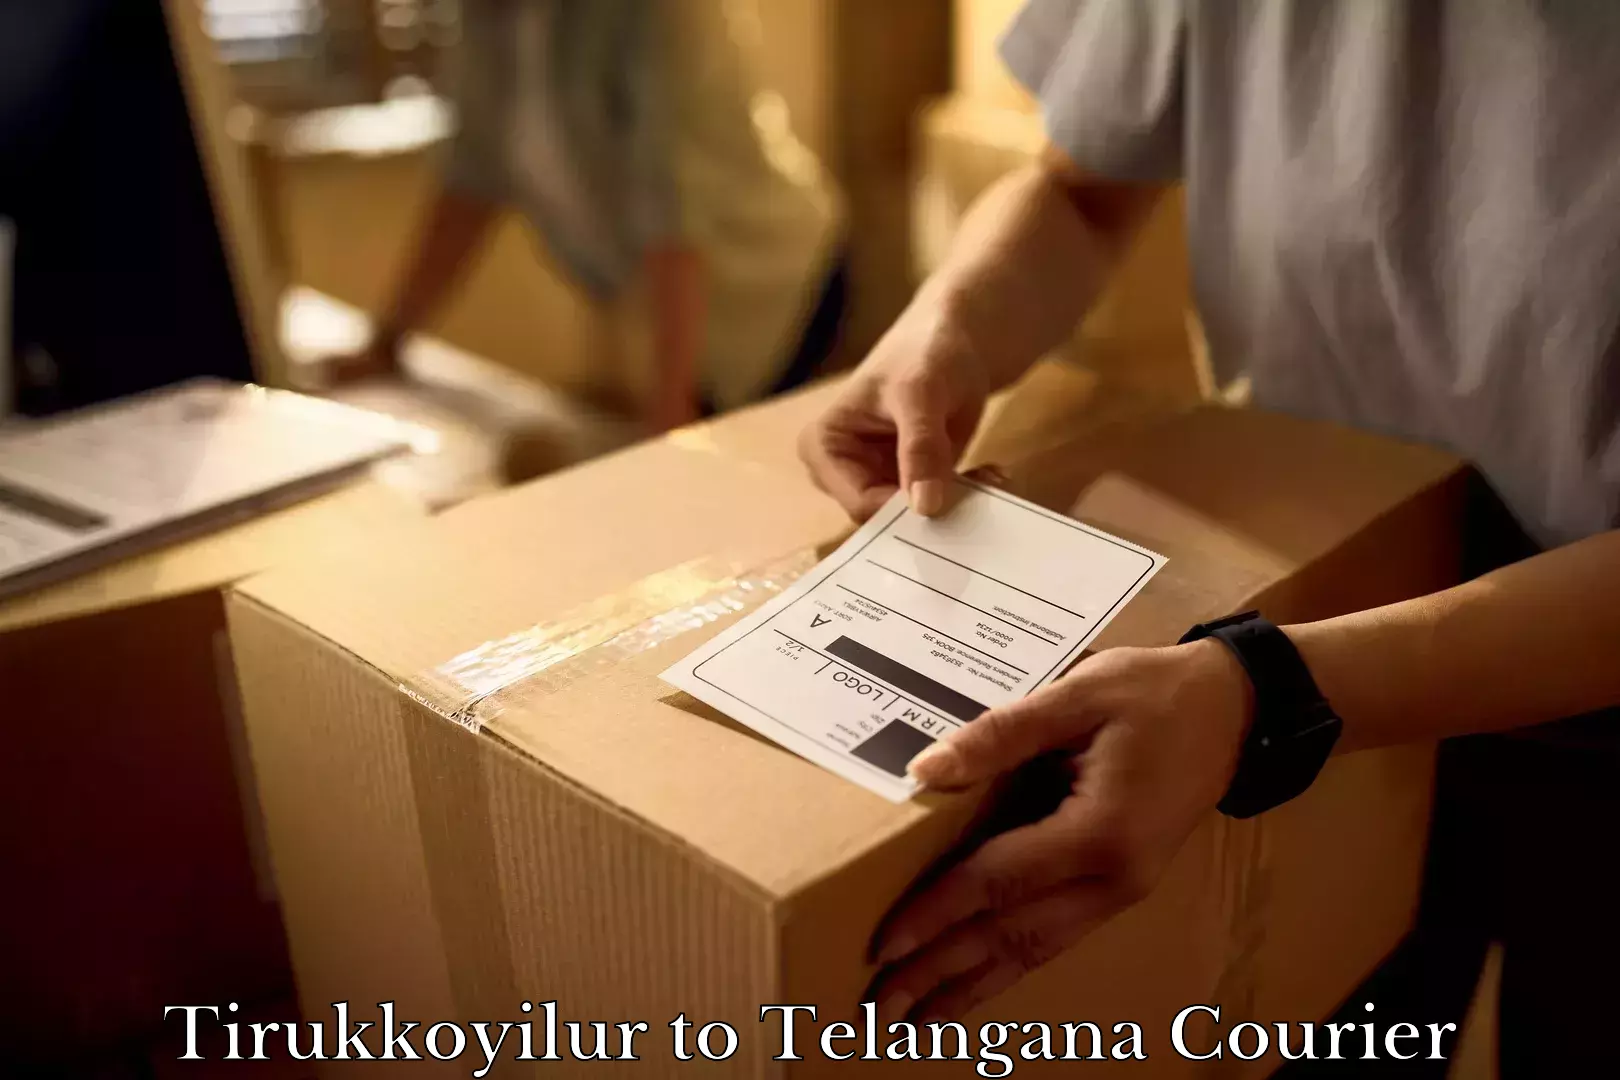 Furniture relocation experts Tirukkoyilur to Pathipaka